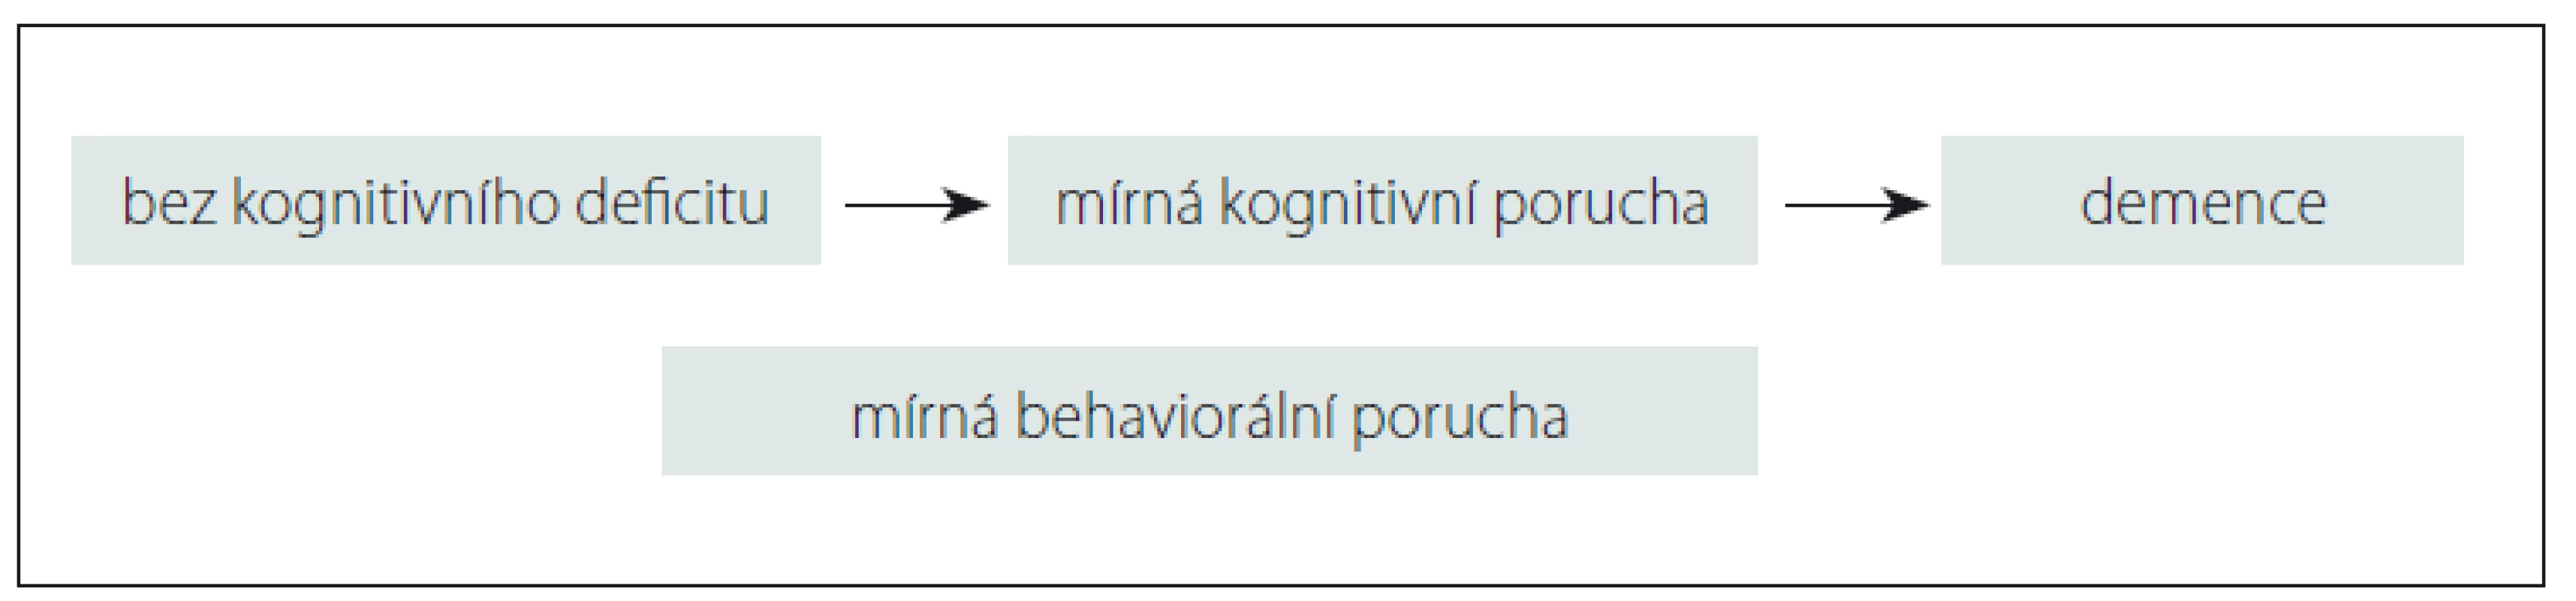 Diagnostická kategorie mírné behaviorální poruchy.<br>
Fig. 1. Diagnostic category of mild behavioral impairment.